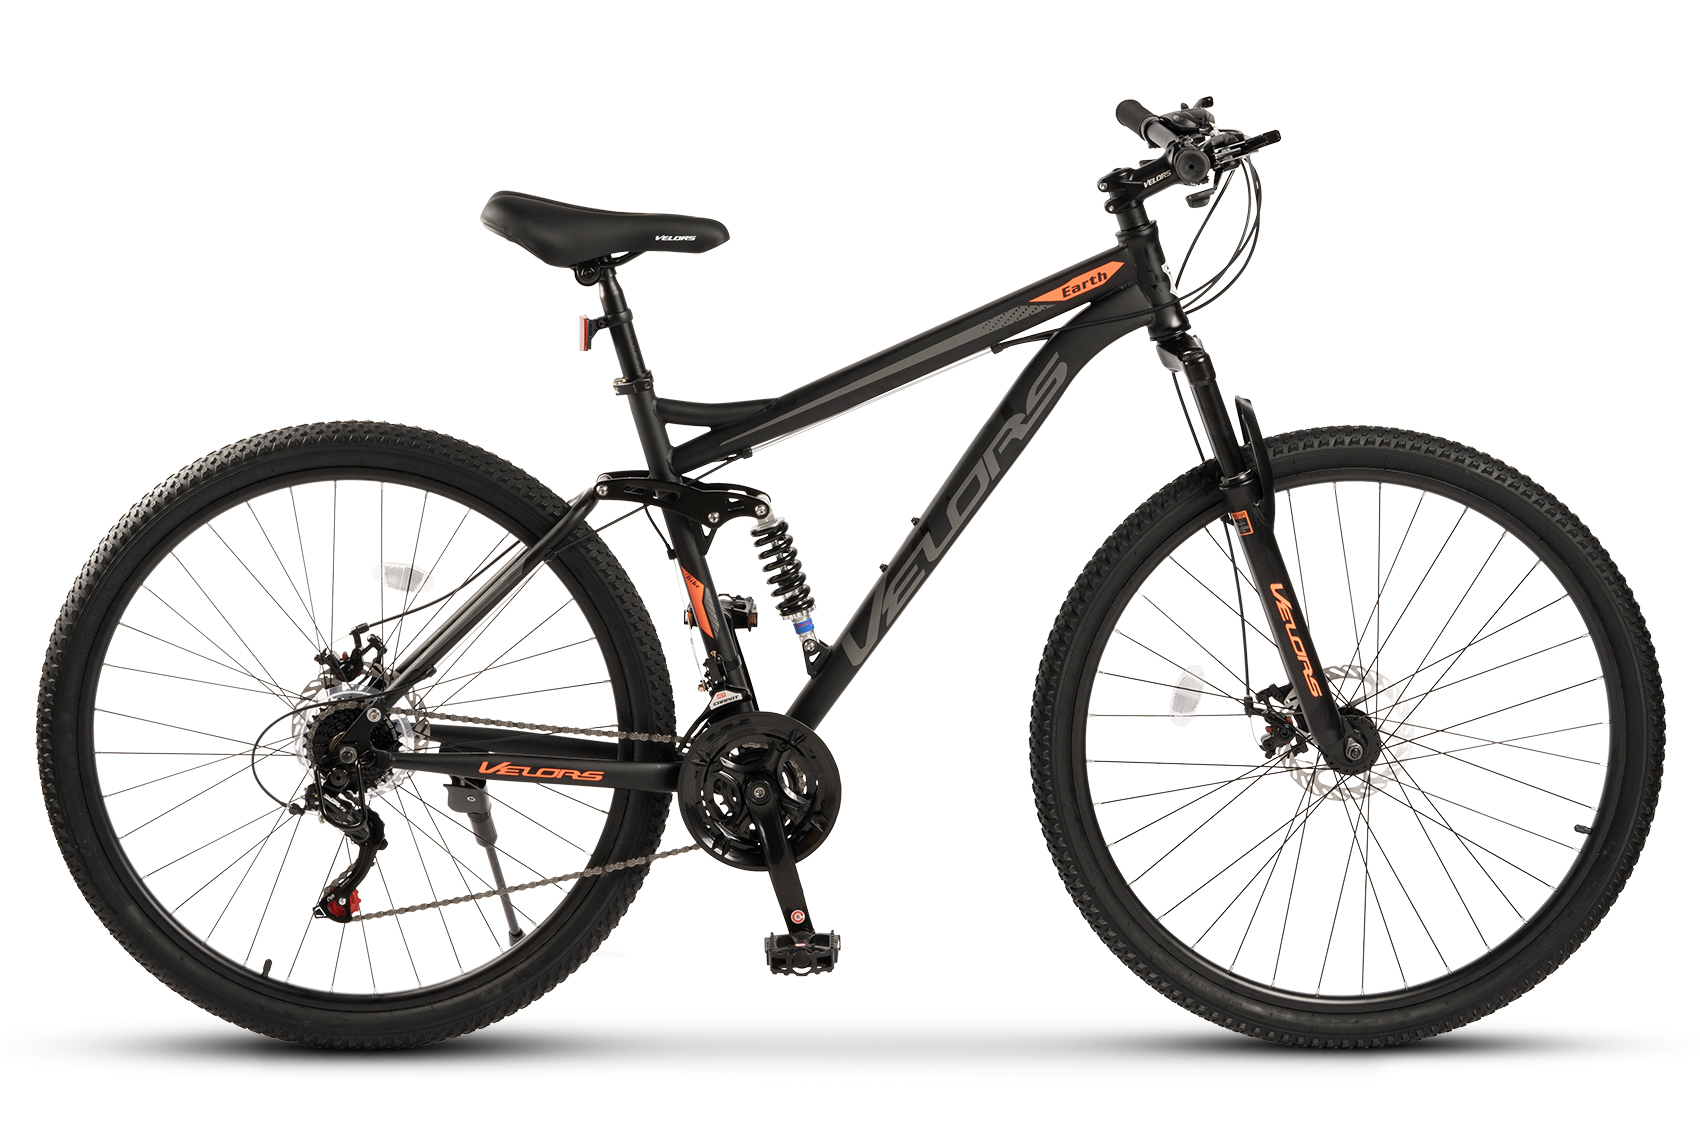 PROMO BICICLETE - Bicicleta MTB Full-Suspension Velors Earth V2960G 29", Negru/Gri/Portocaliu, https:carpatsport.ro